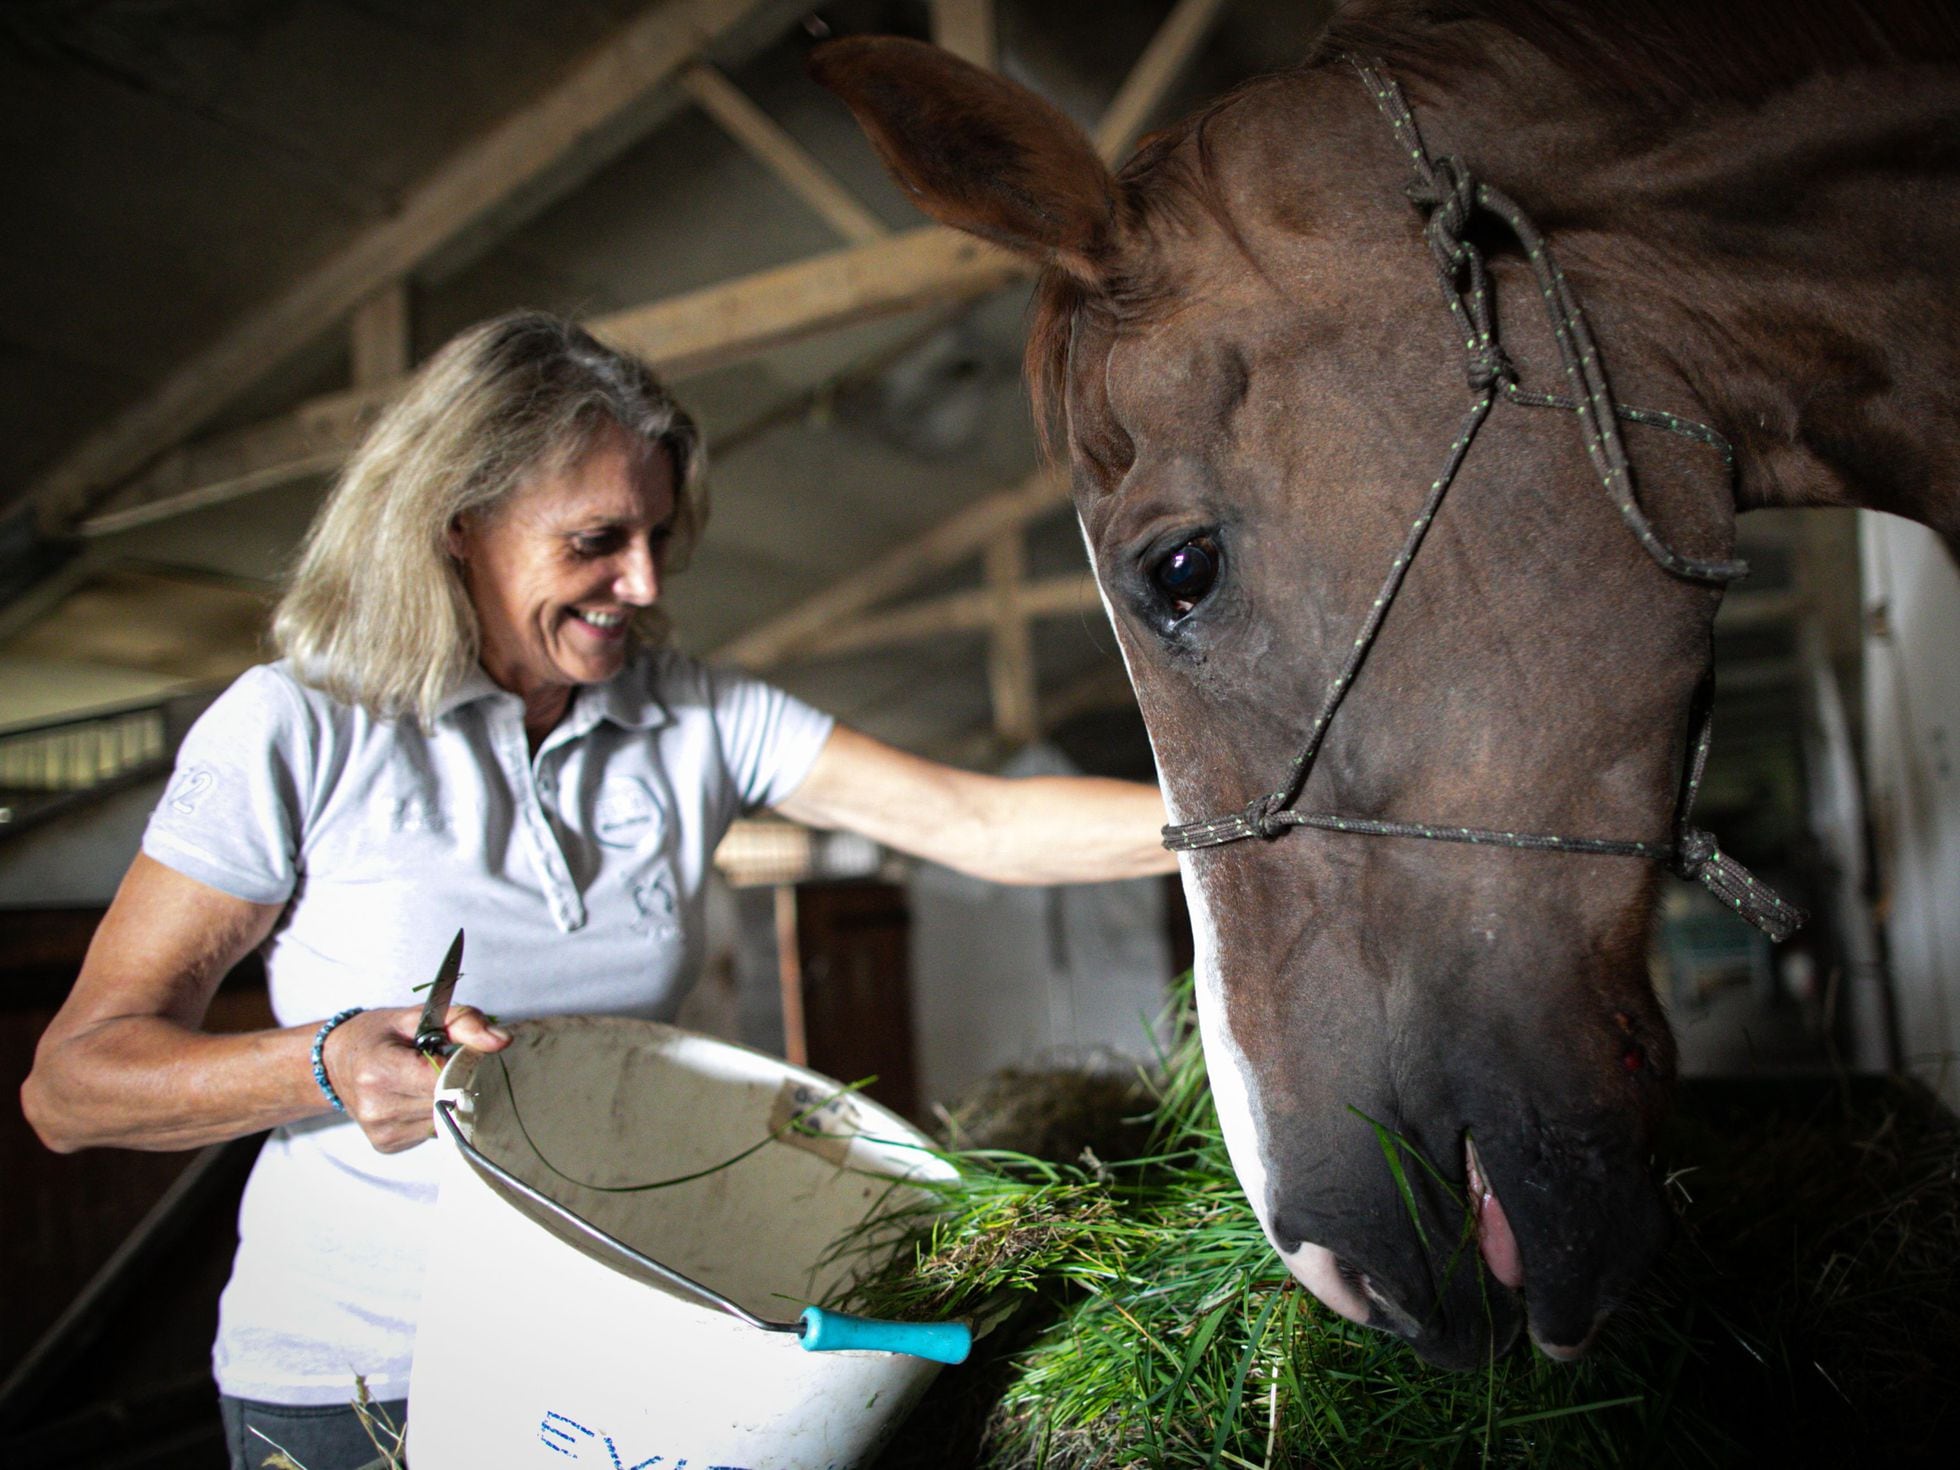 O enigma dos cavalos mutilados na França rural, Internacional